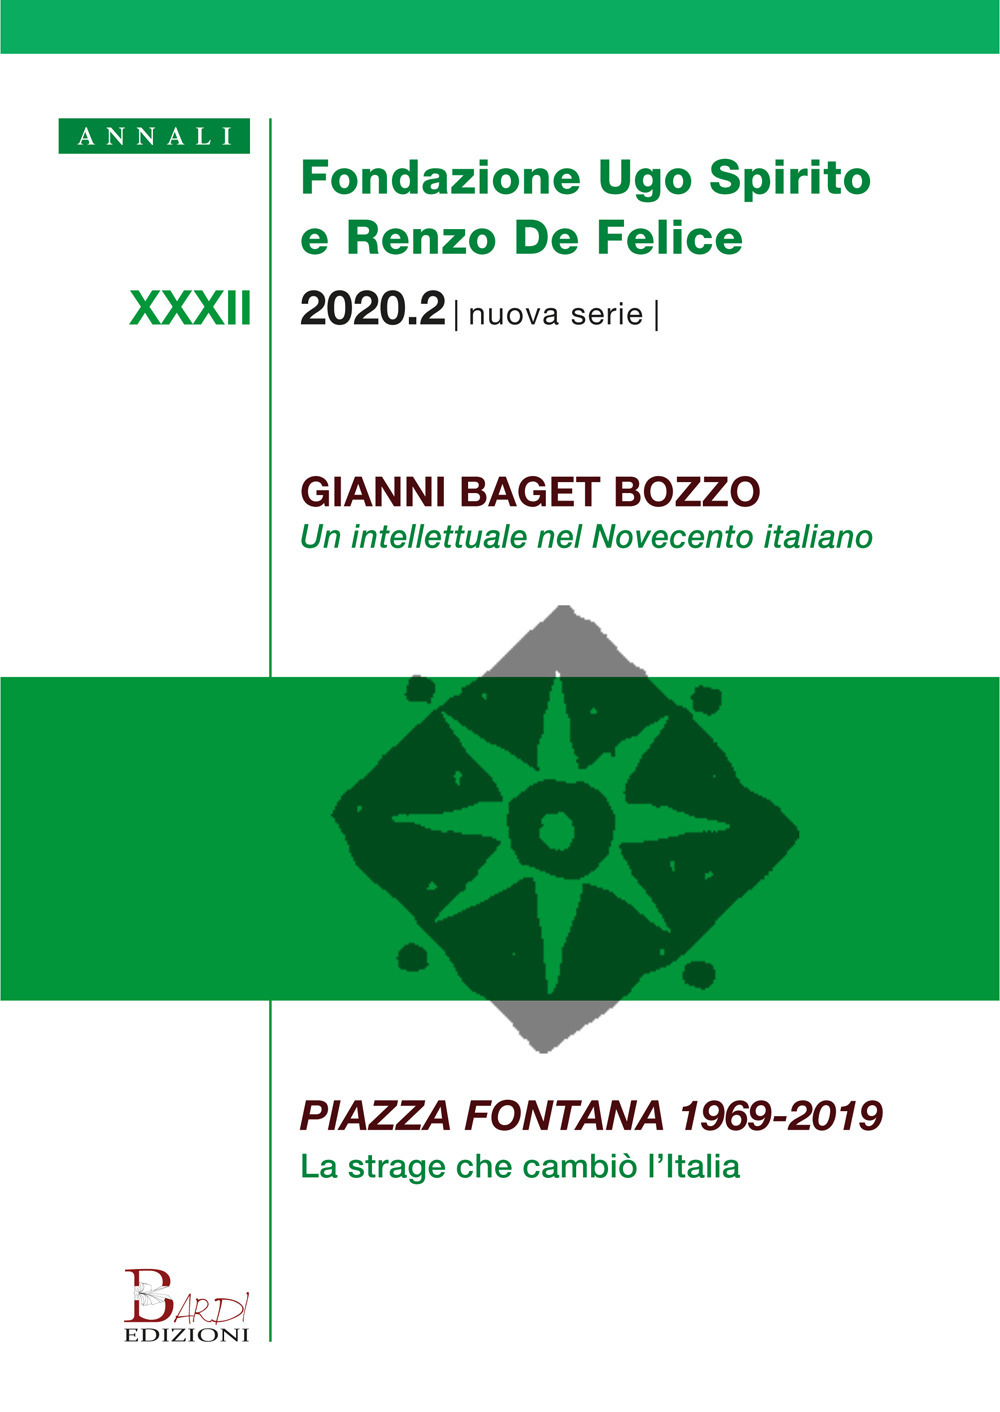 Annali Fondazione Ugo Spirito e Renzo De Felice. Gianni Baget Bozzo-Piazza Fontana 1969-2019 (2020)